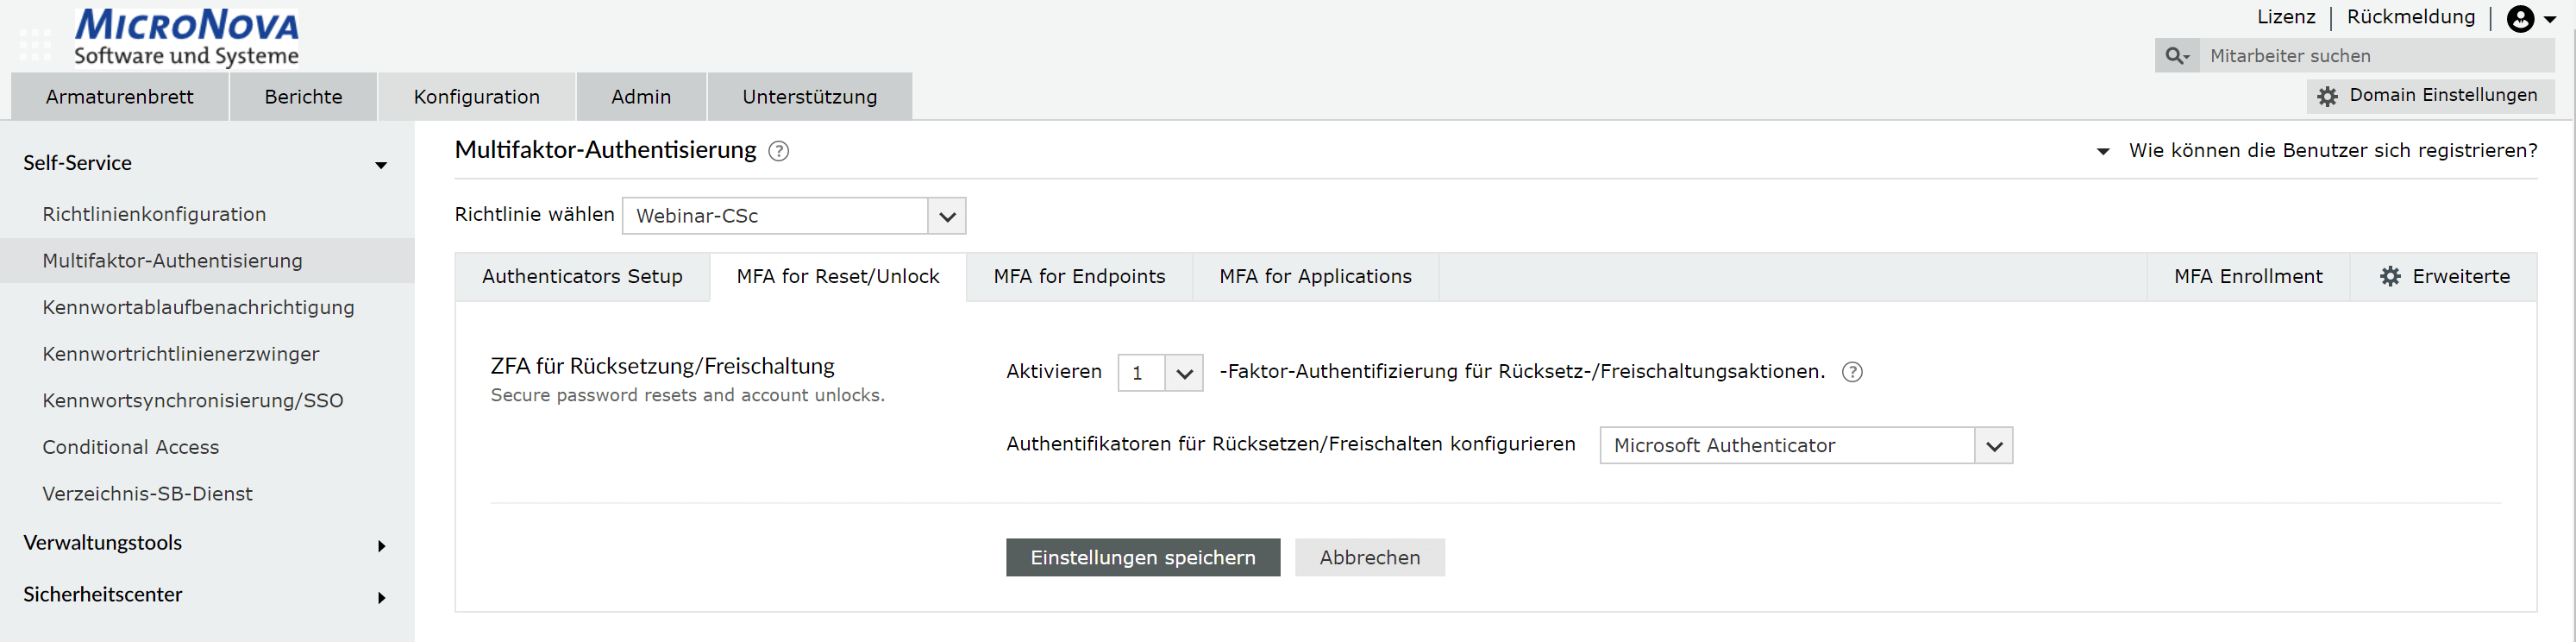 Screenshot ADSelfService Plus: MFA-Einstellungen für Passwort-Zurücksetzen / Account freischalten